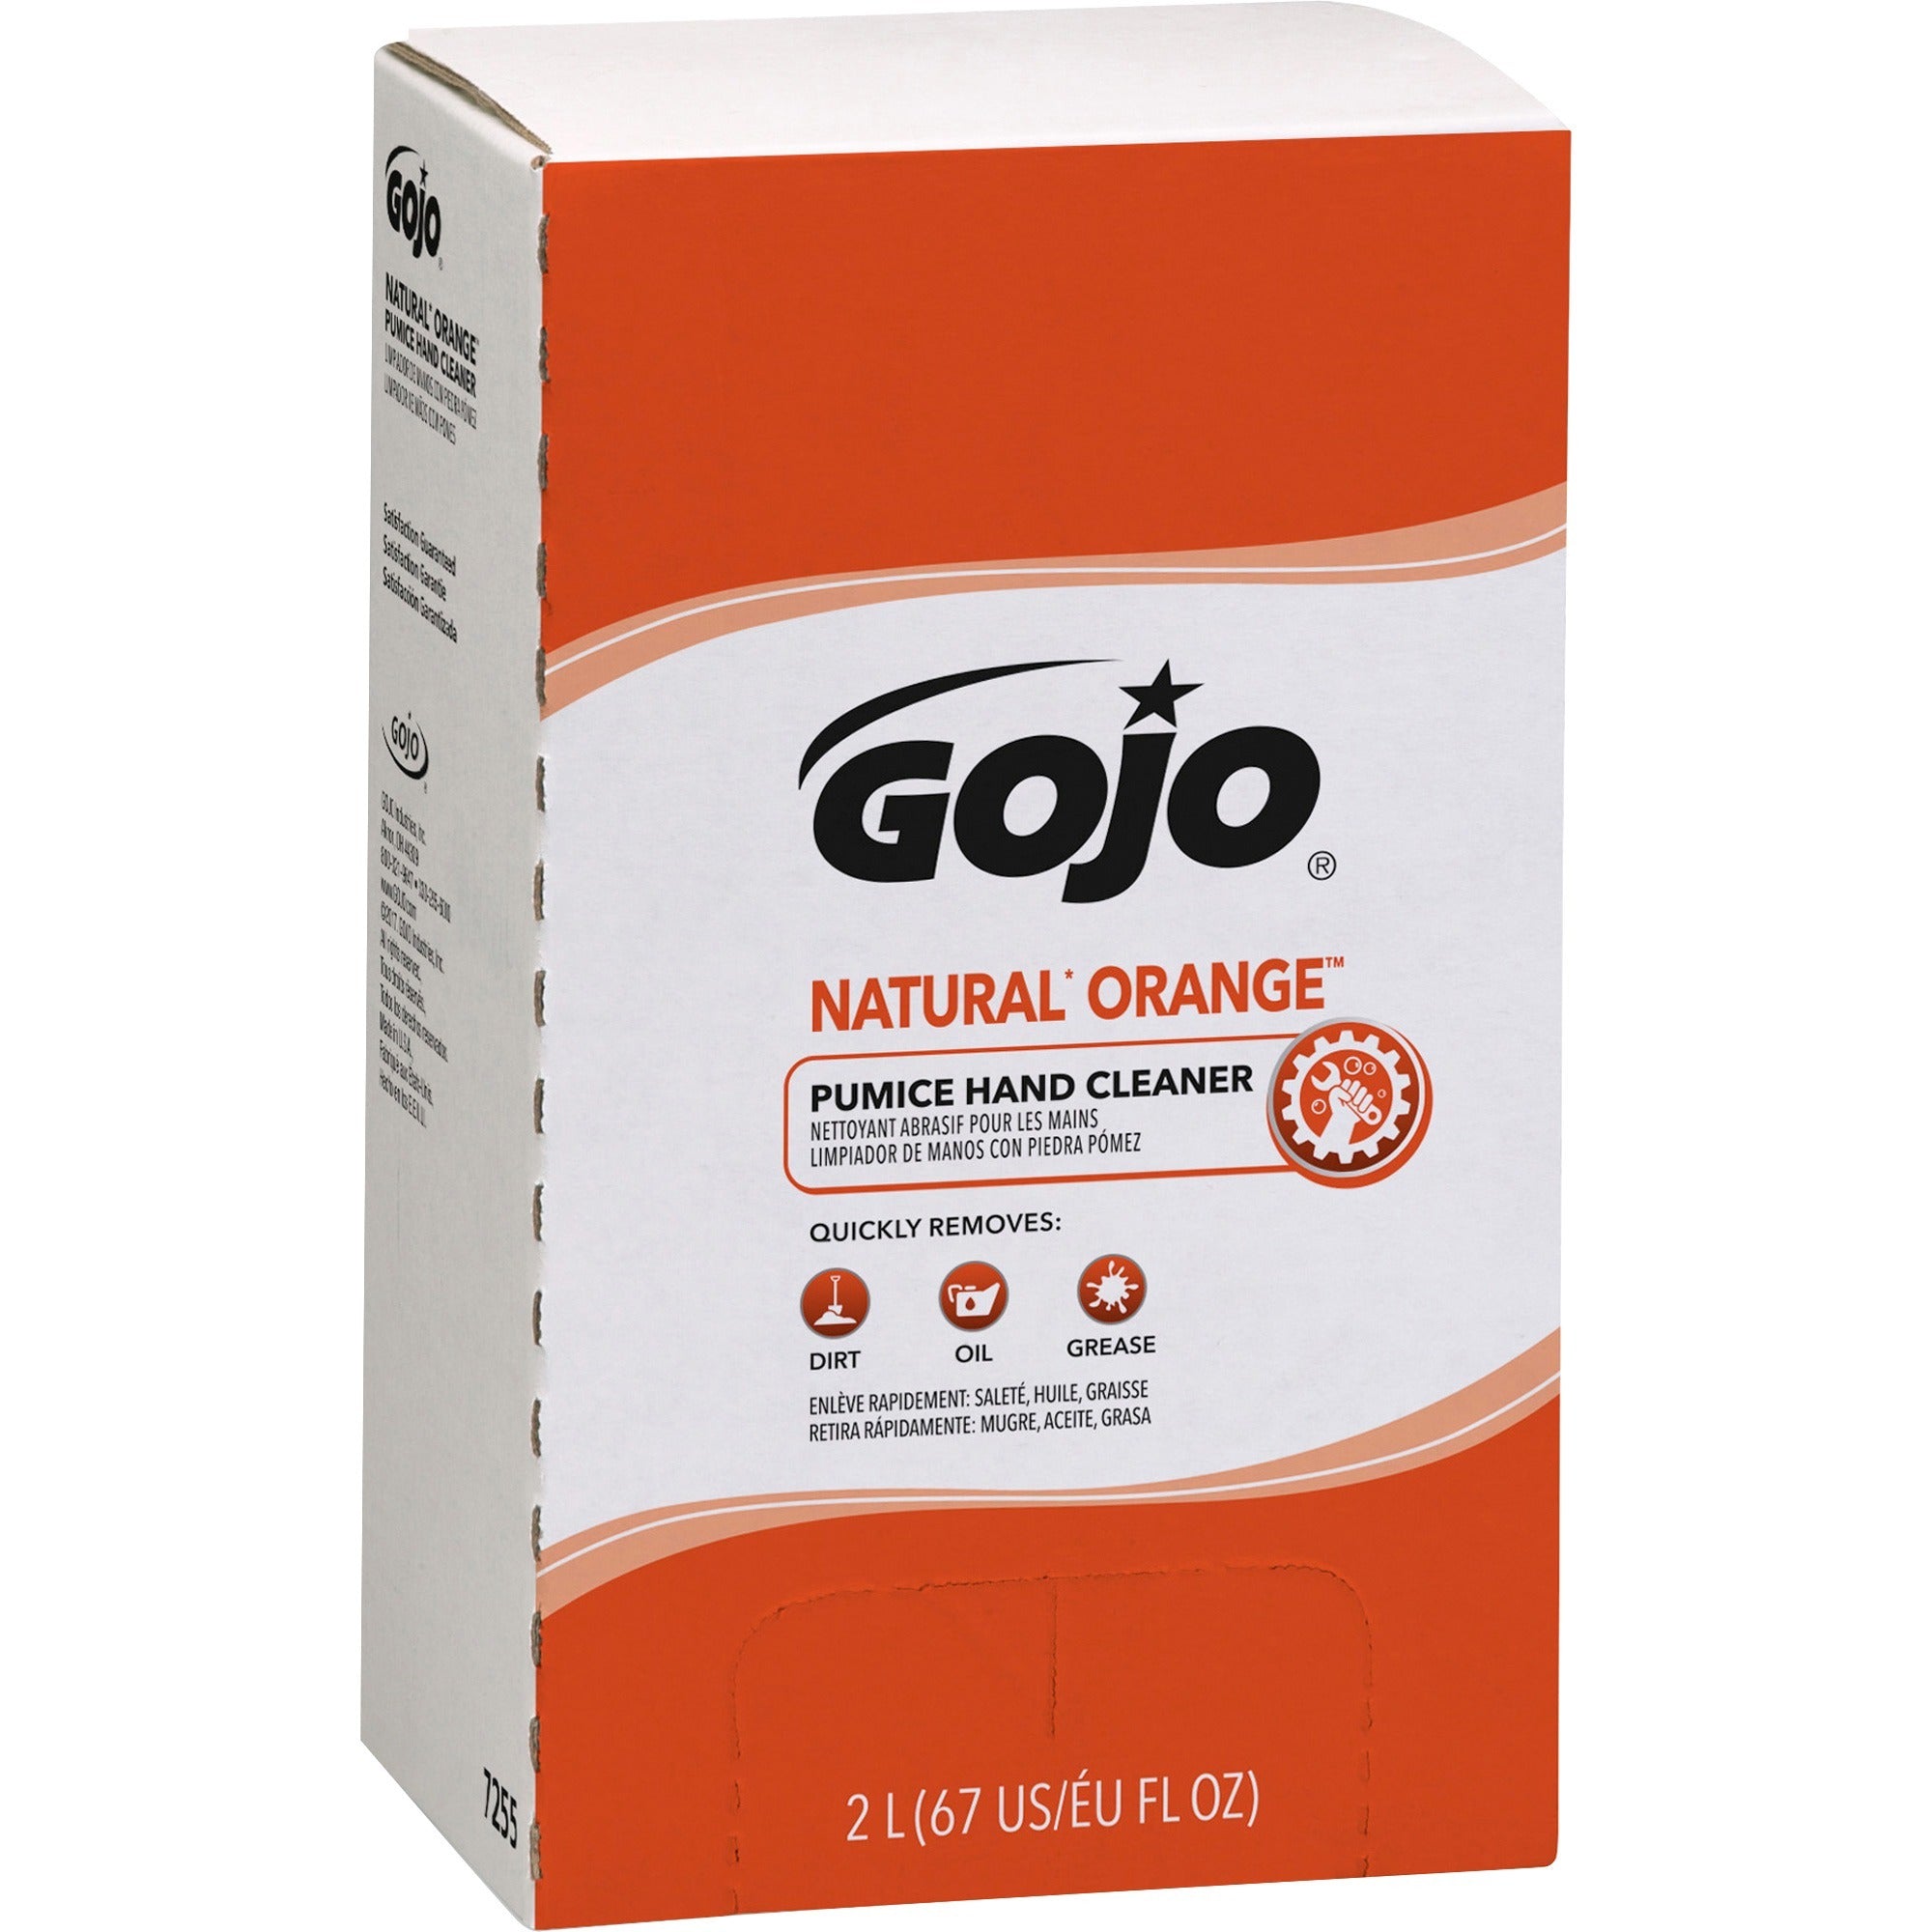 gojo-natural-orange-pumice-hand-cleaner-refill-orange-citrus-scentfor-676-fl-oz-2-l-dirt-remover-grease-remover-soilage-remover-hand-gray-4-carton_goj725504 - 2